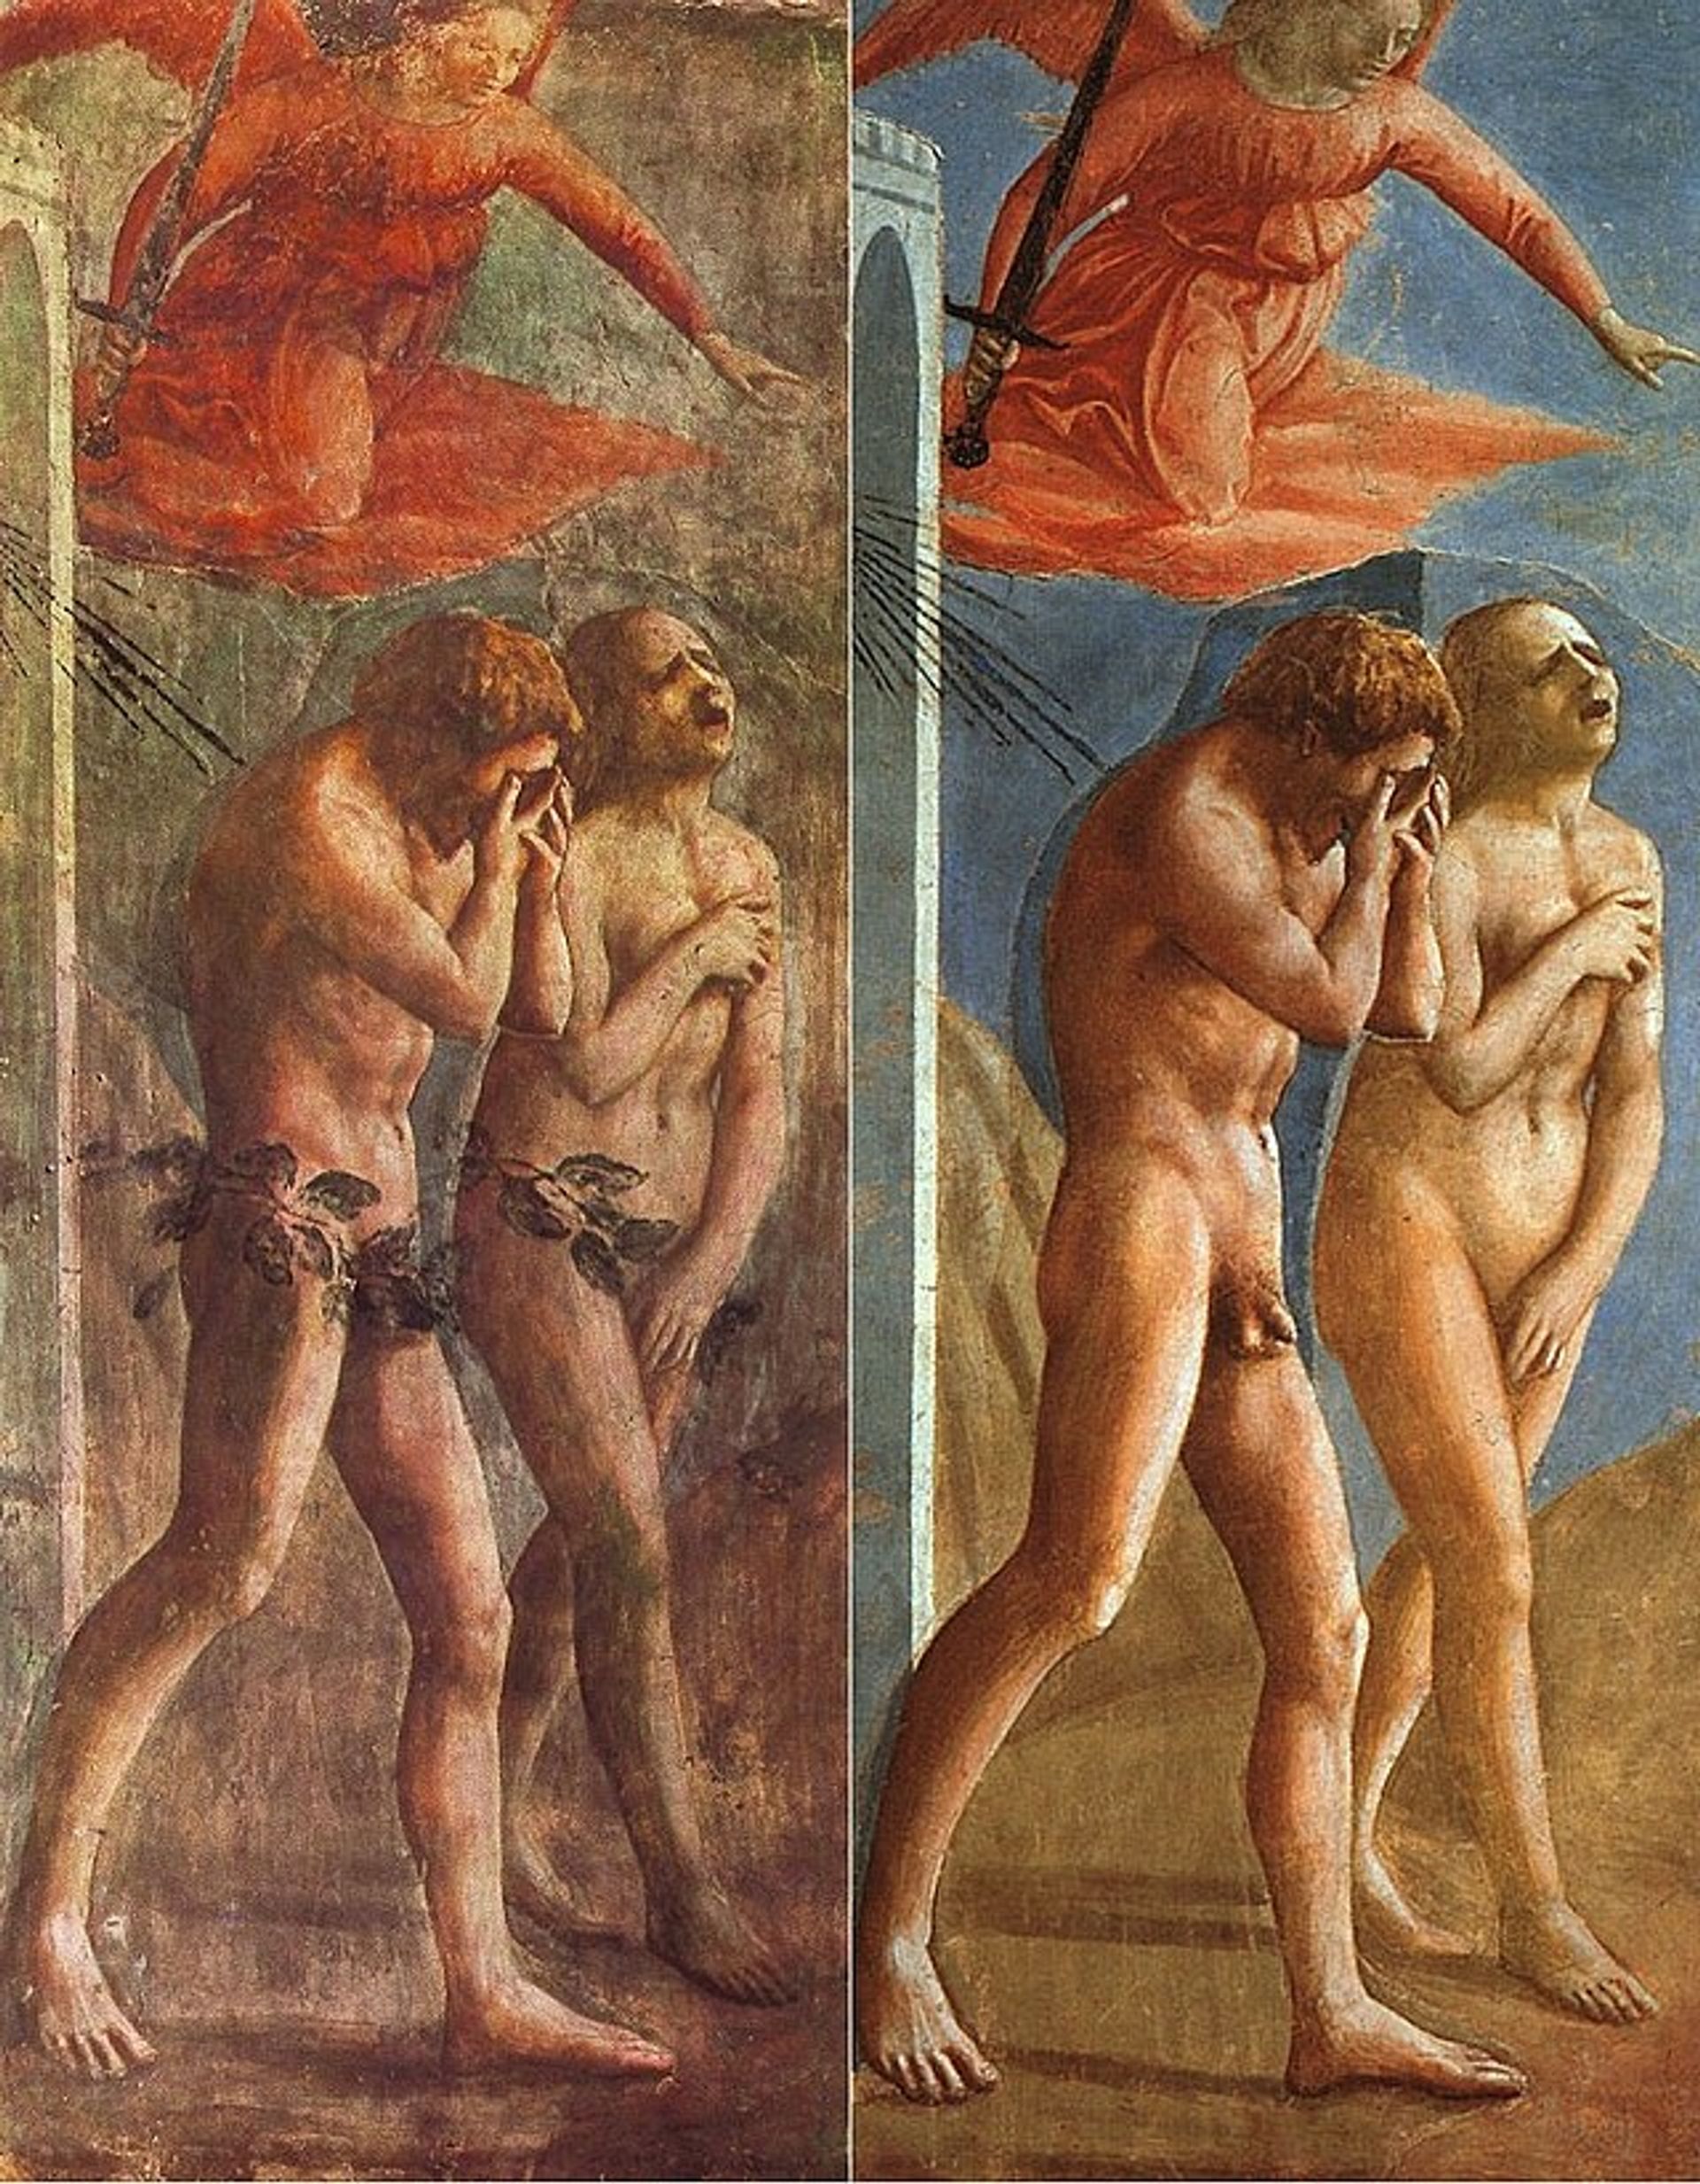 Masaccio - La Cacciata dei progenitori dall'Eden